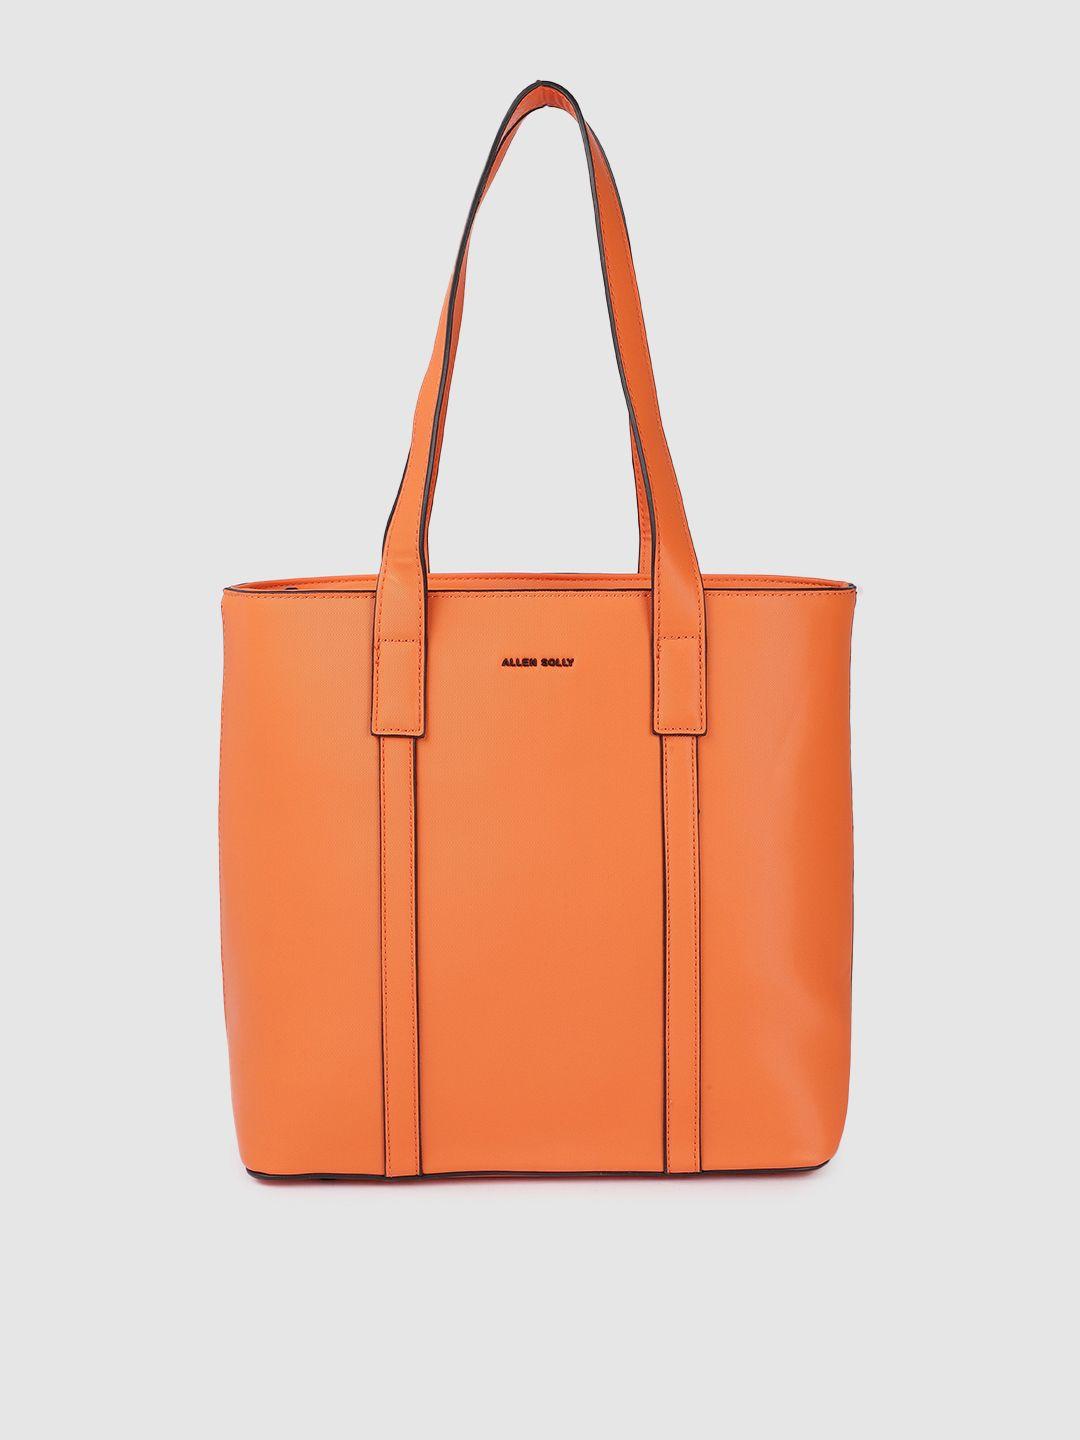 allen solly orange solid structured shoulder bag